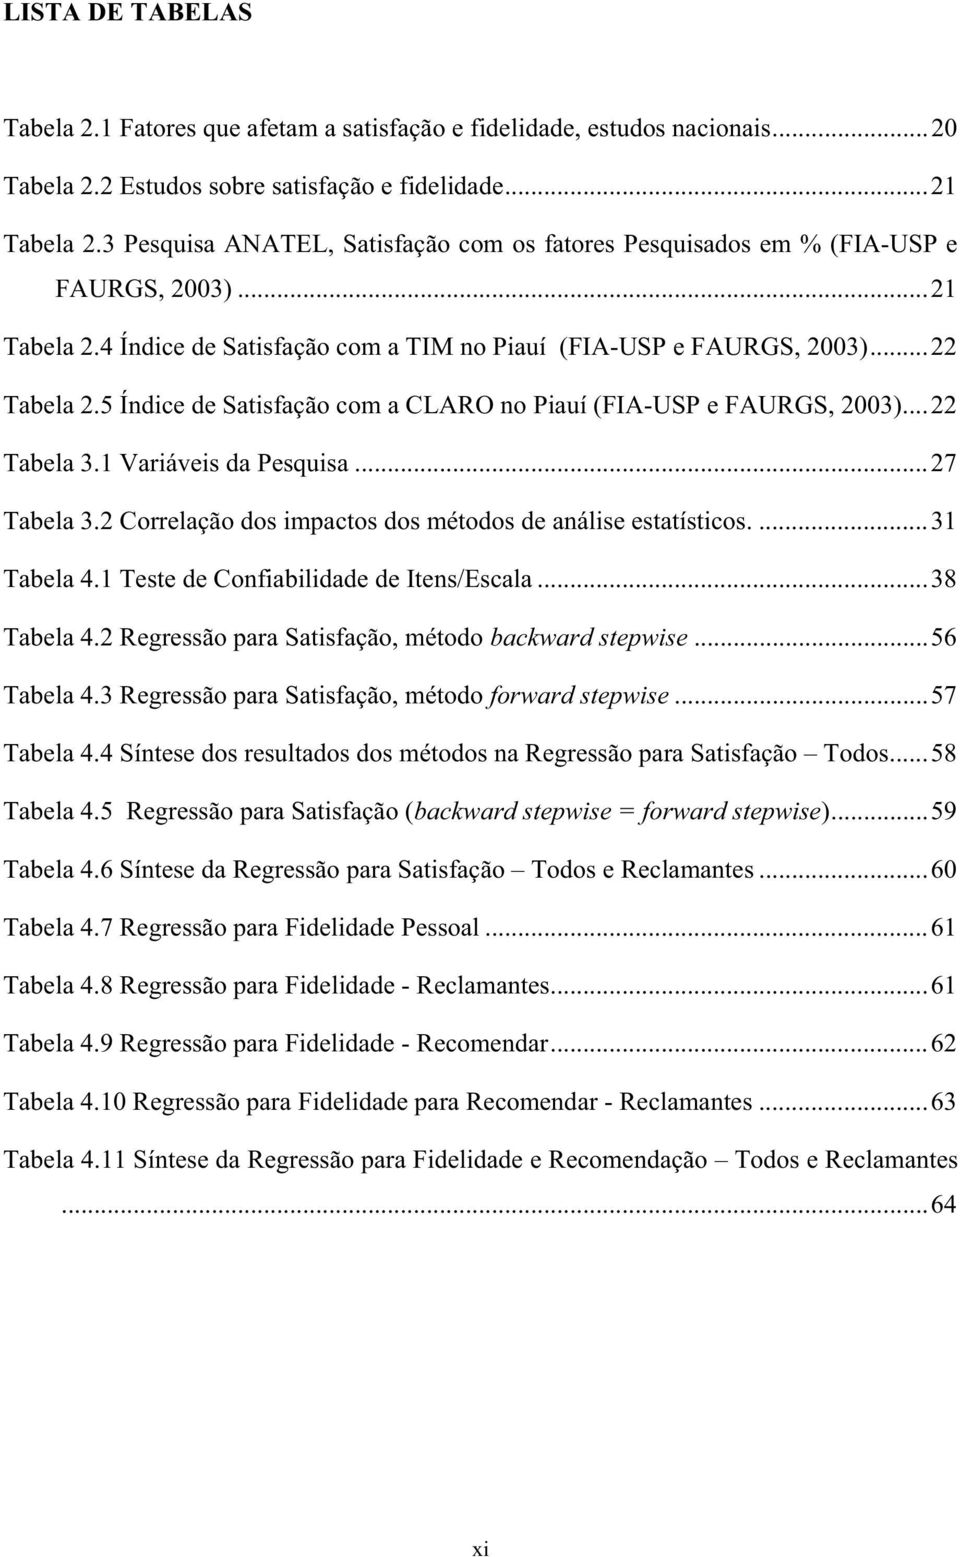 5 Índice de Satisfação com a CLARO no Piauí (FIA-USP e FAURGS, 23)...22 Tabela 3.1 Variáveis da Pesquisa...27 Tabela 3.2 Correlação dos impactos dos métodos de análise estatísticos....31 Tabela 4.